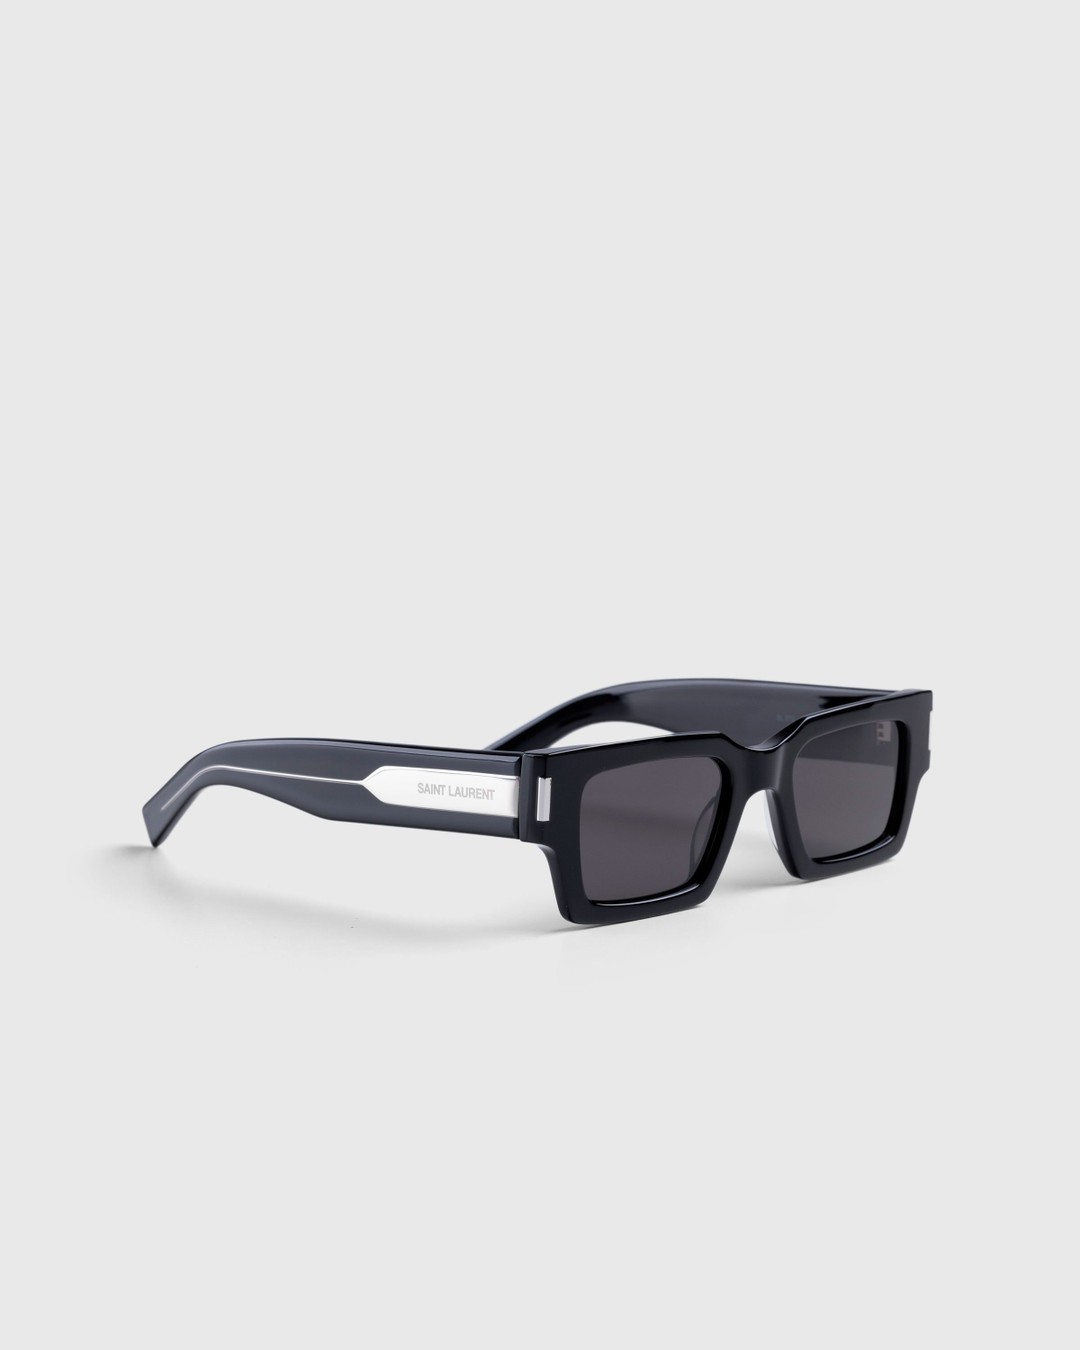 Saint Laurent – SL 572 Square Frame Sunglasses Black/Crystal - Sunglasses - Multi - Image 2